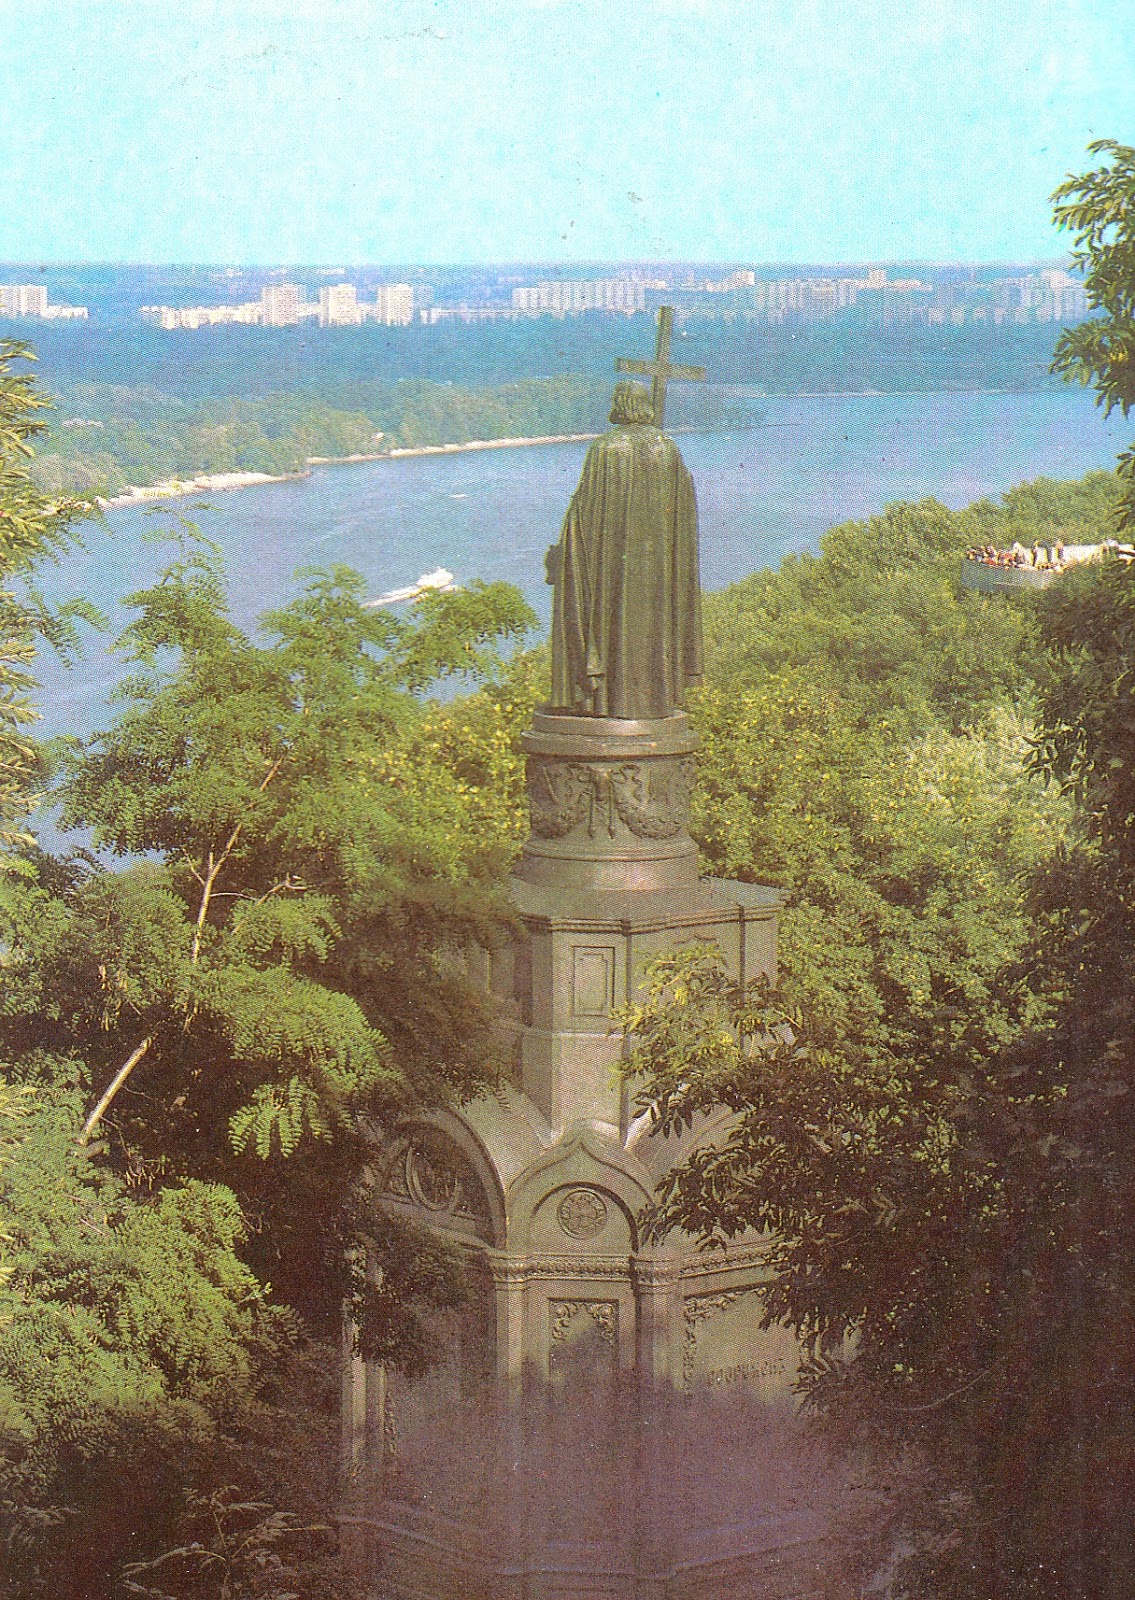 Памятник в киеве александру